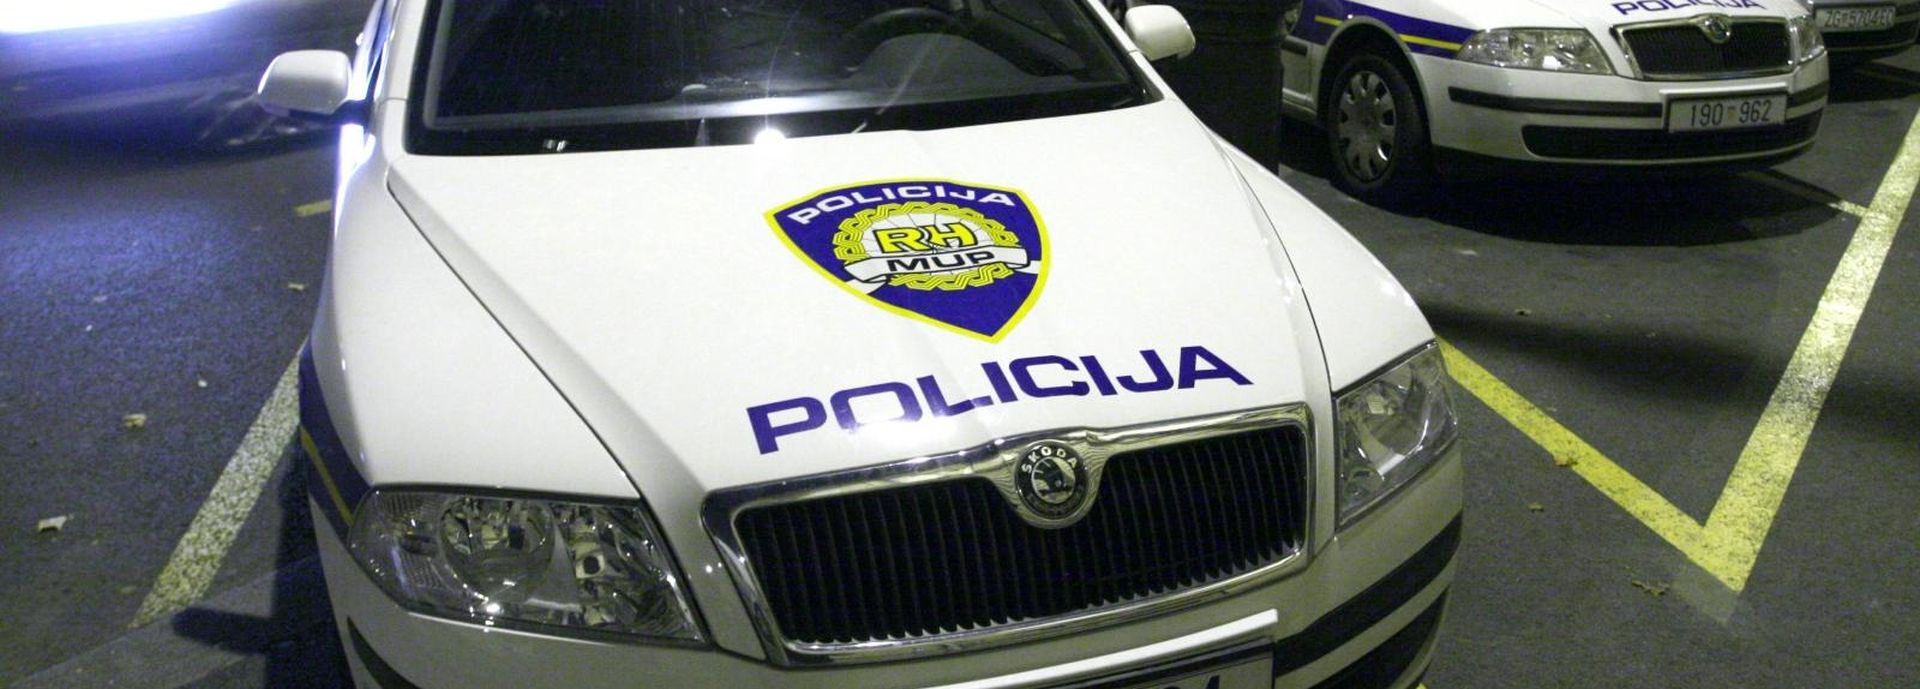 18.10.2008., Zagreb, Hrvatska - Policijski znak na sluzbenim vozilima.
Photo: Goran Jakus/PIXSELL